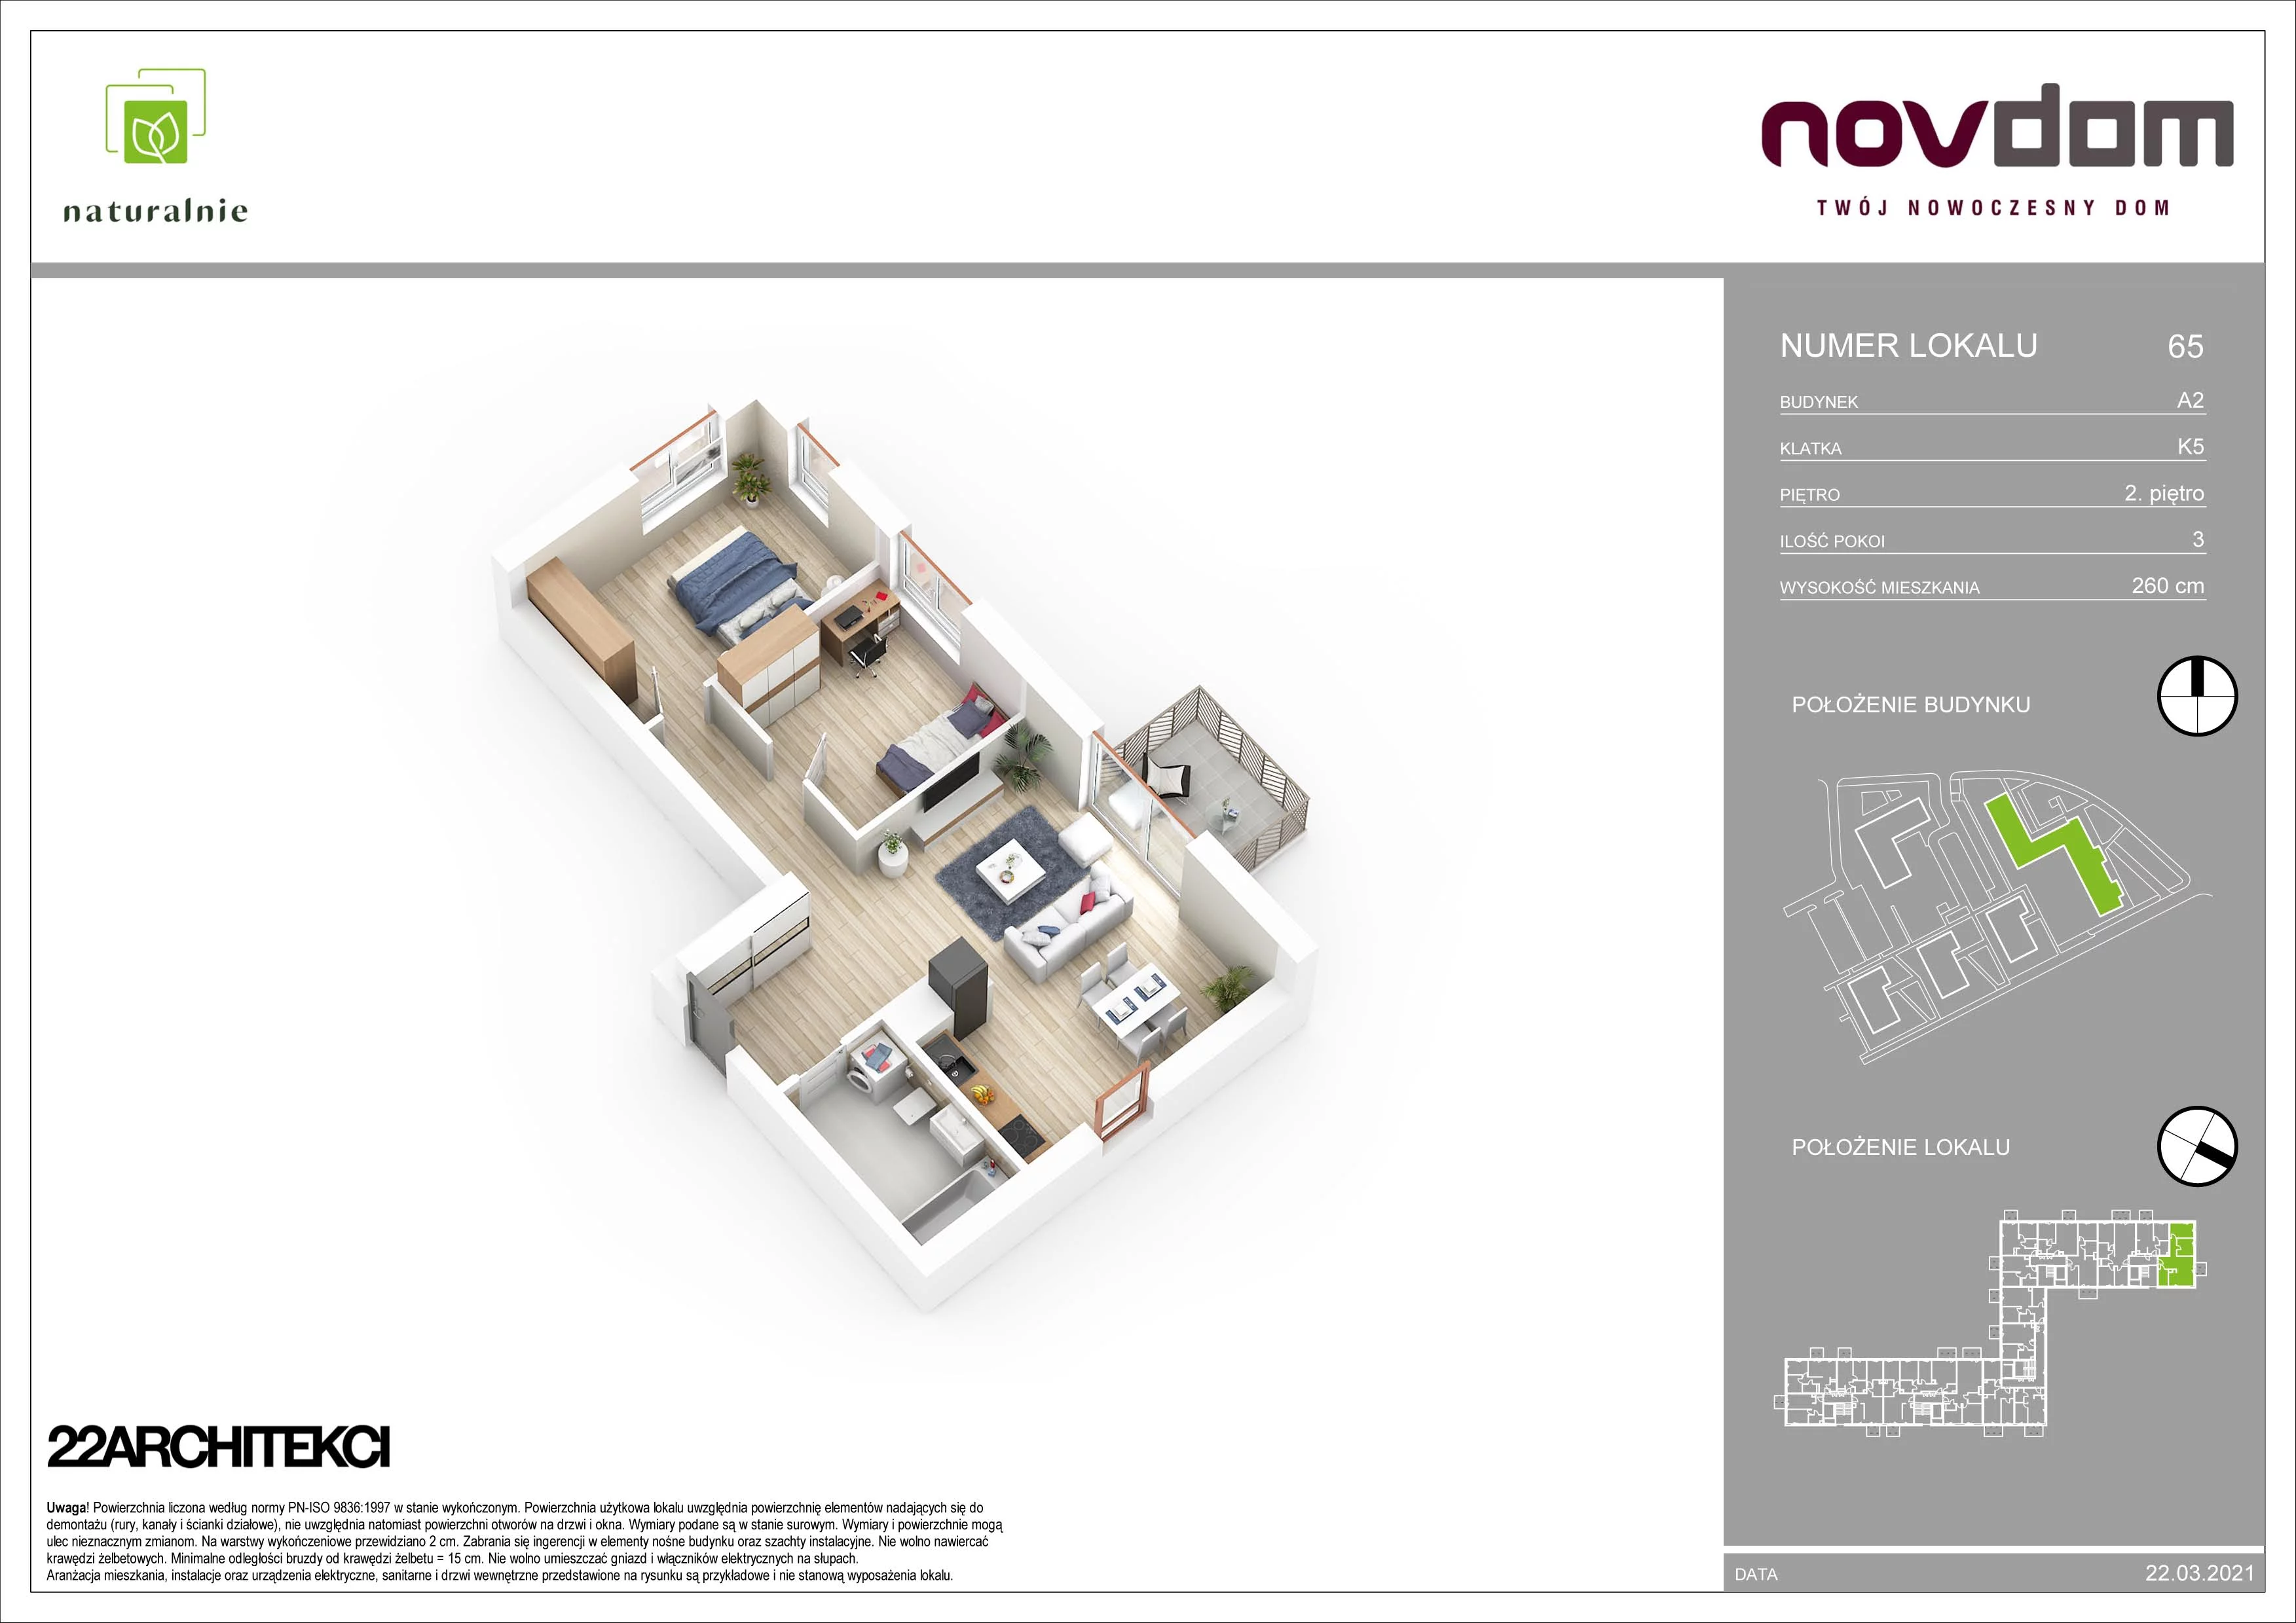 Apartament 68,03 m², piętro 2, oferta nr A2/65, Osiedle Naturalnie, Mława, ul. Nowowiejskiego